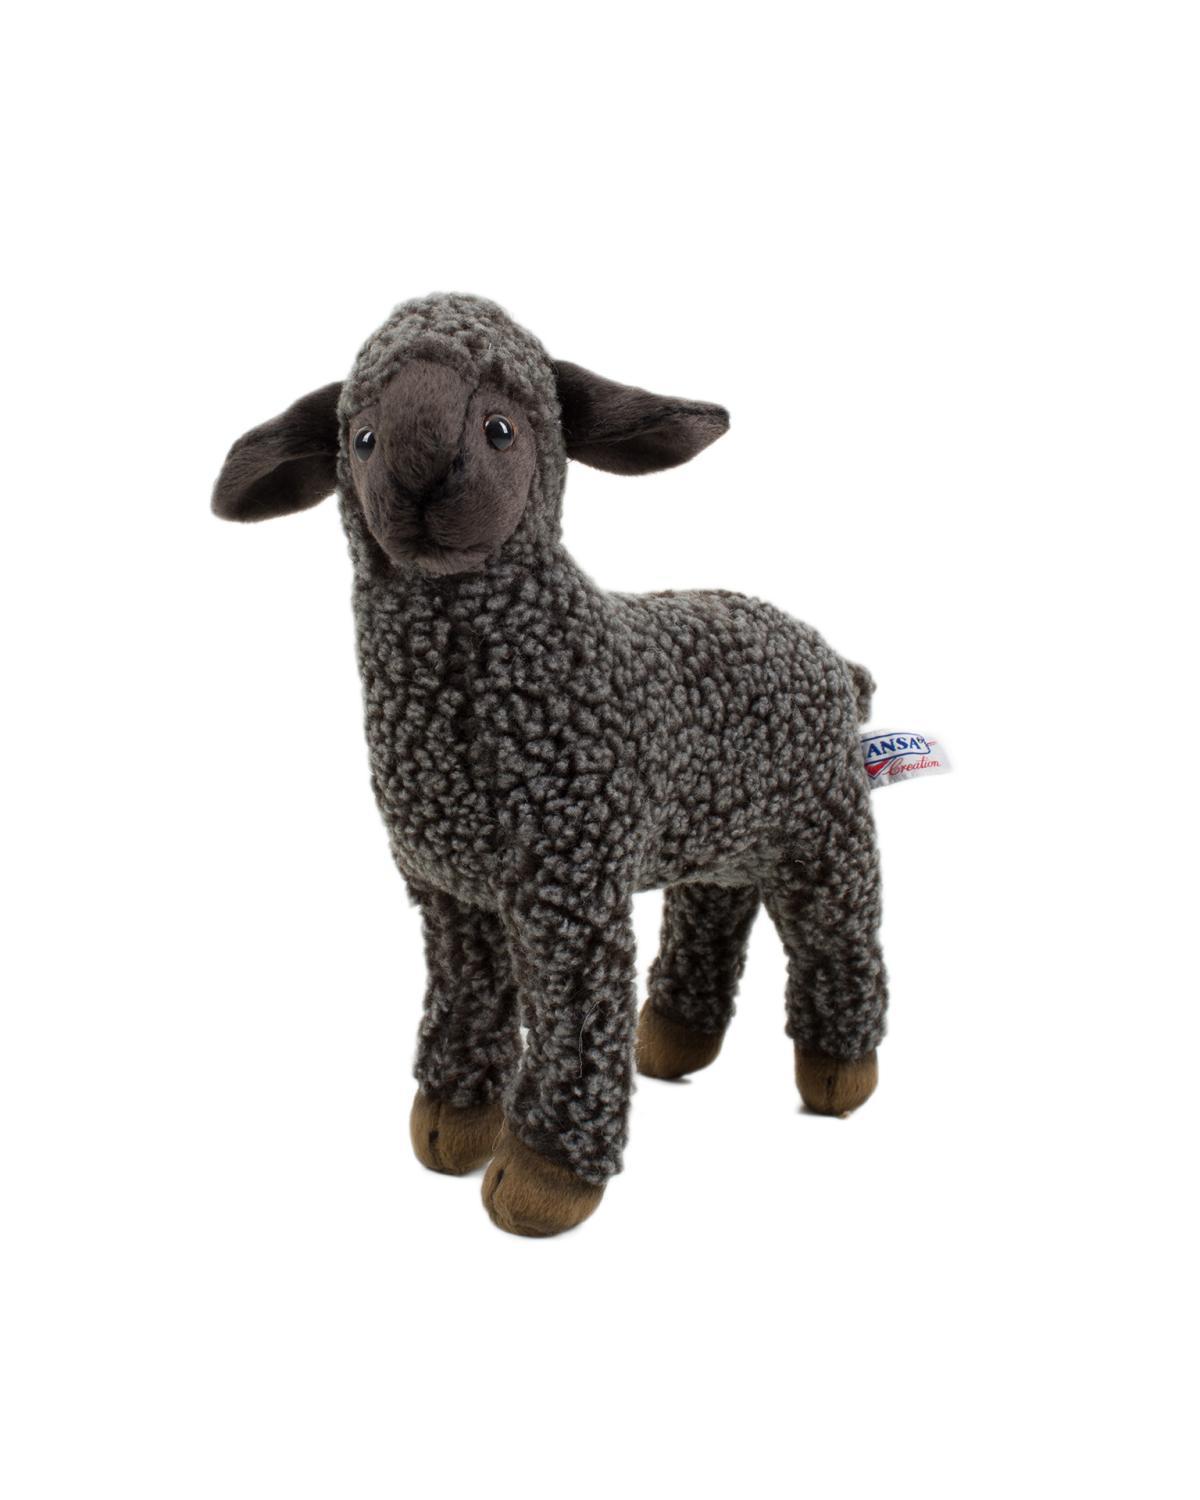 baa baa black sheep stuffed animal